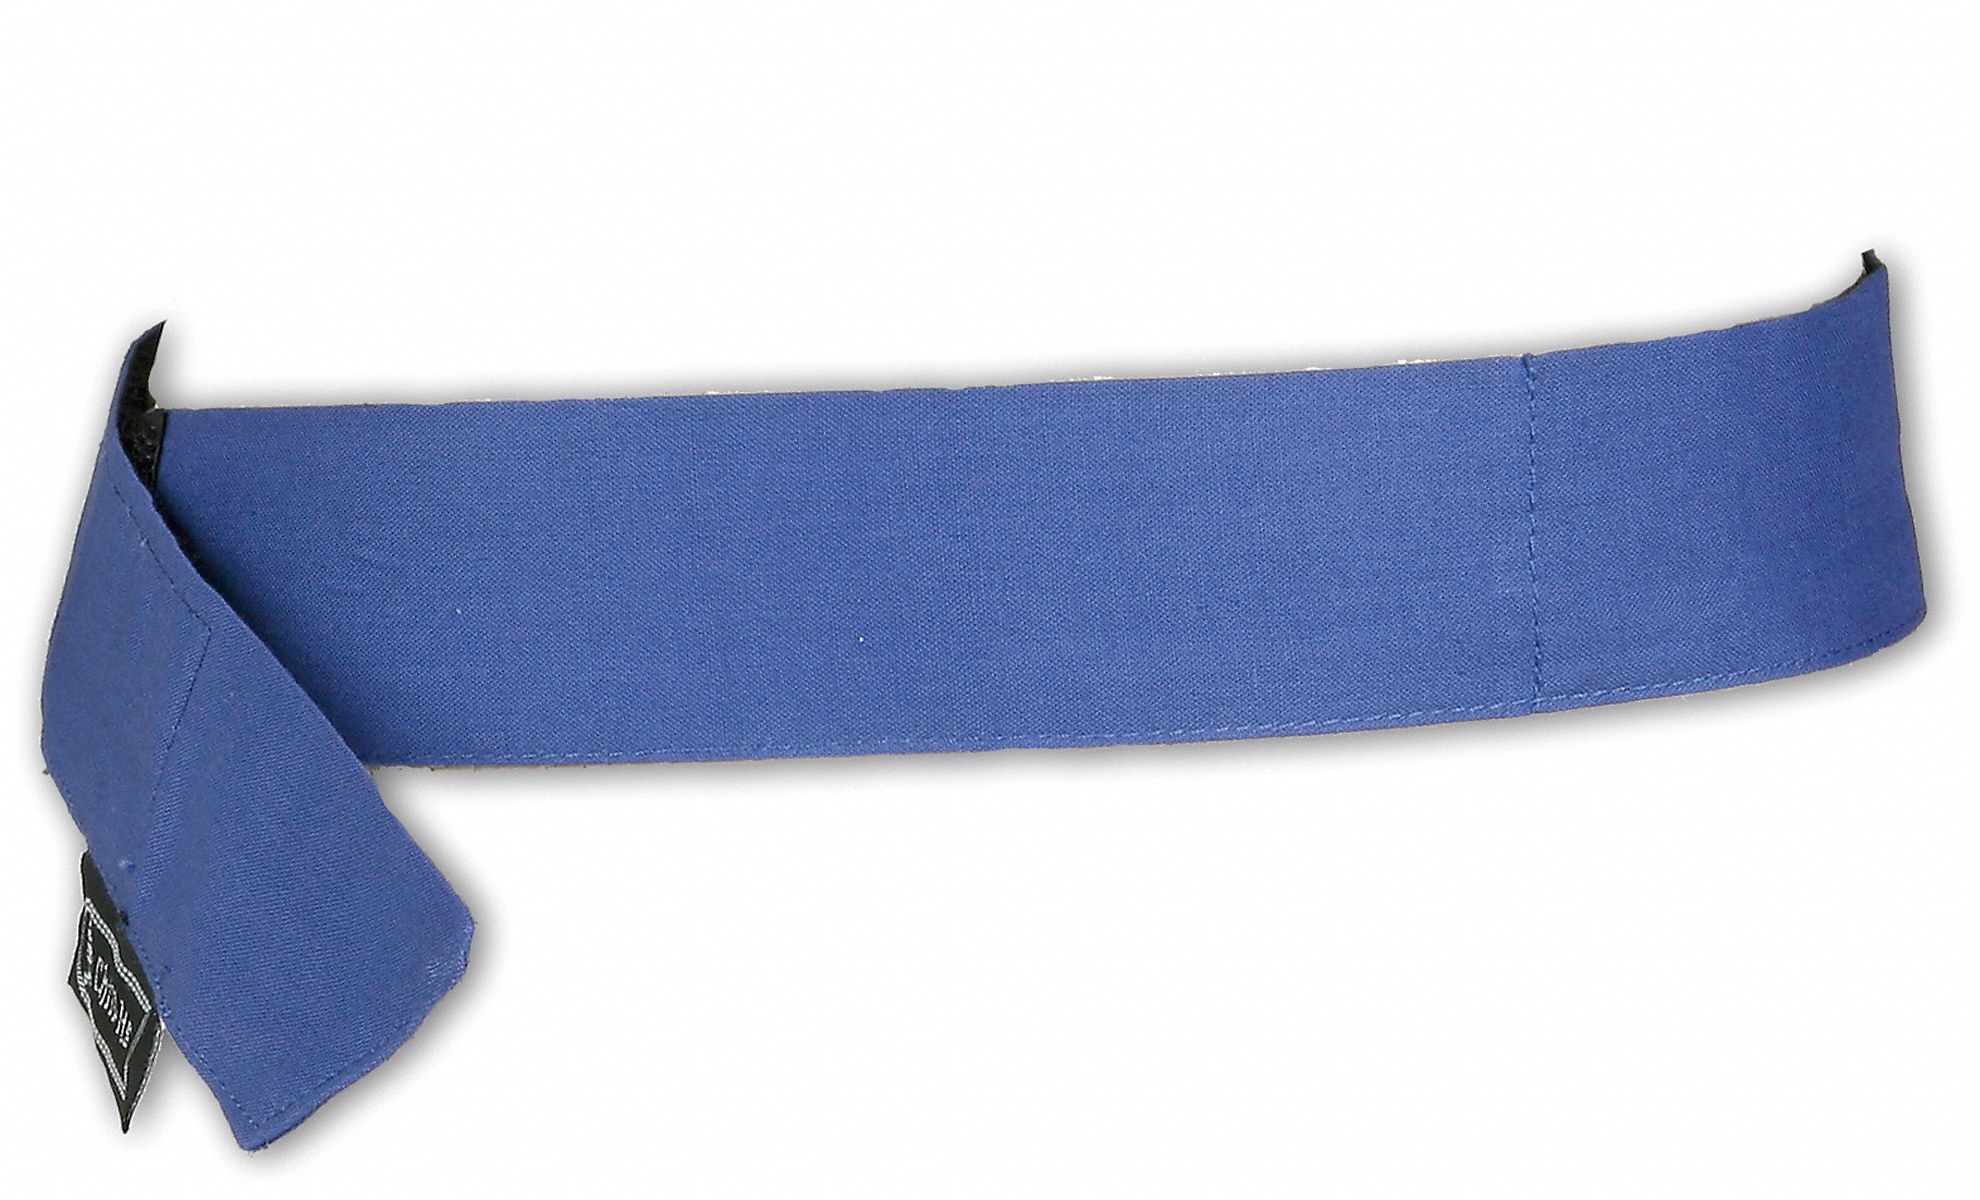 16V843 - Cooling Bandana Blue One Size